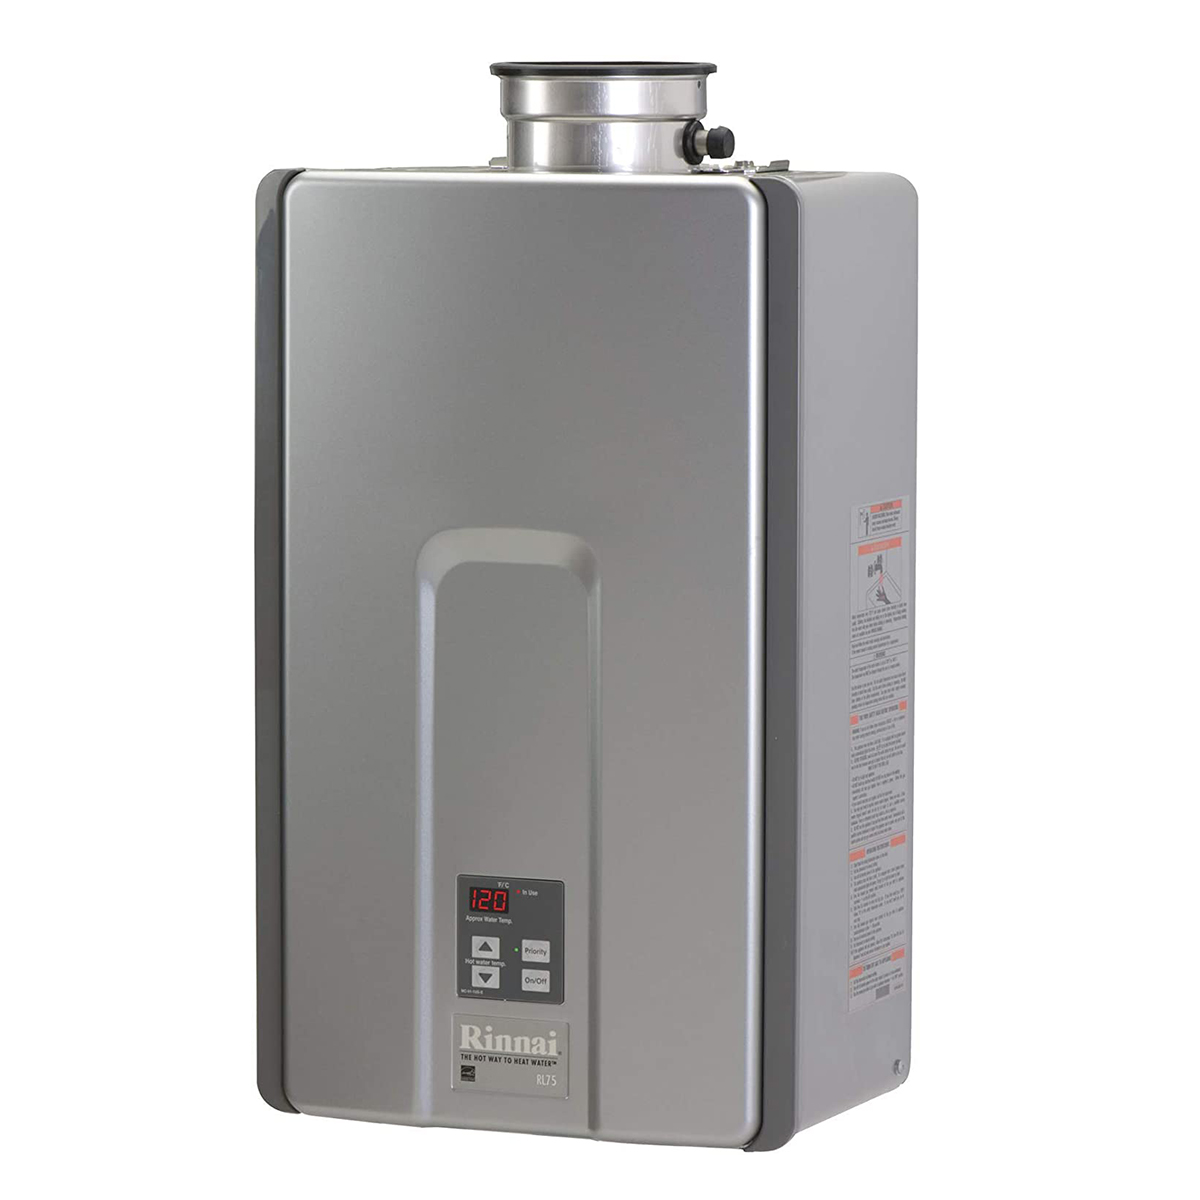 Rinnai RL75iN High-Efficiency Tankless Water Heater